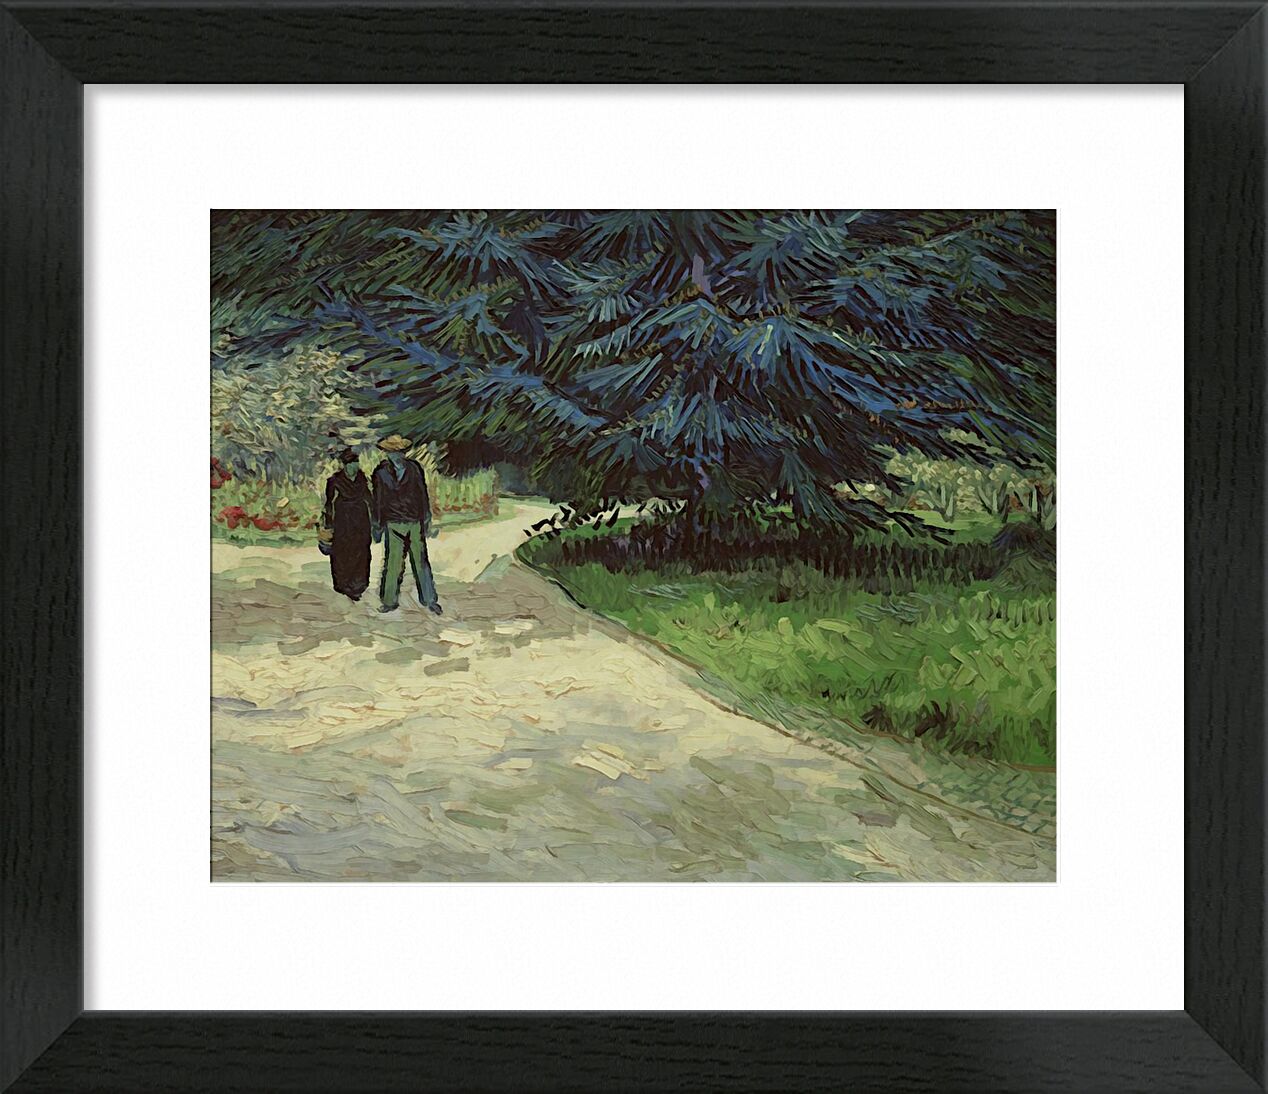 Couple in the Park - Van Gogh desde Bellas artes, Prodi Art, Van gogh, pintura, Pareja, parque, árbol, camino, vegetales